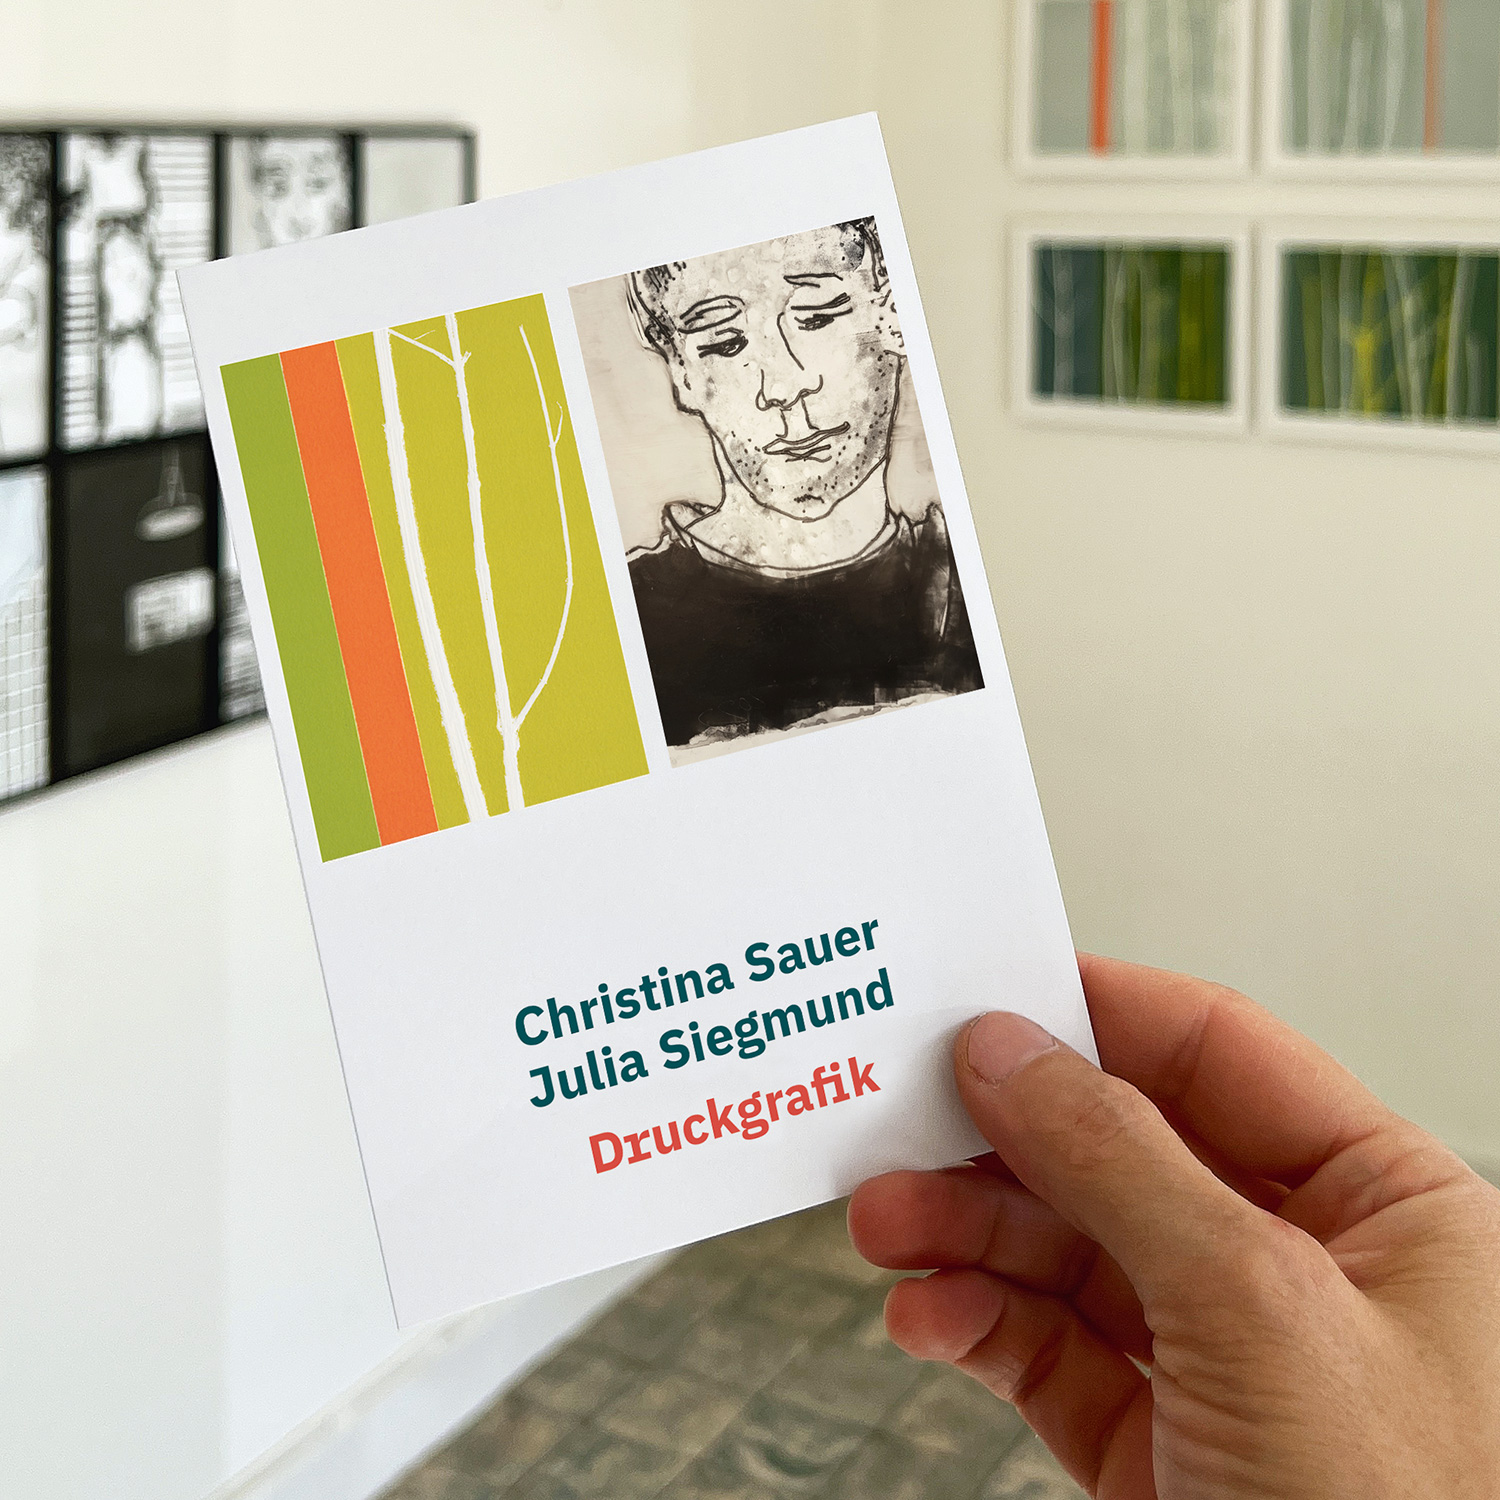 DRUCKGRAFIK | CHRISTINA SAUER & JULIA SIEGMUND | echtwert Galerie Münster | Einladungskarte